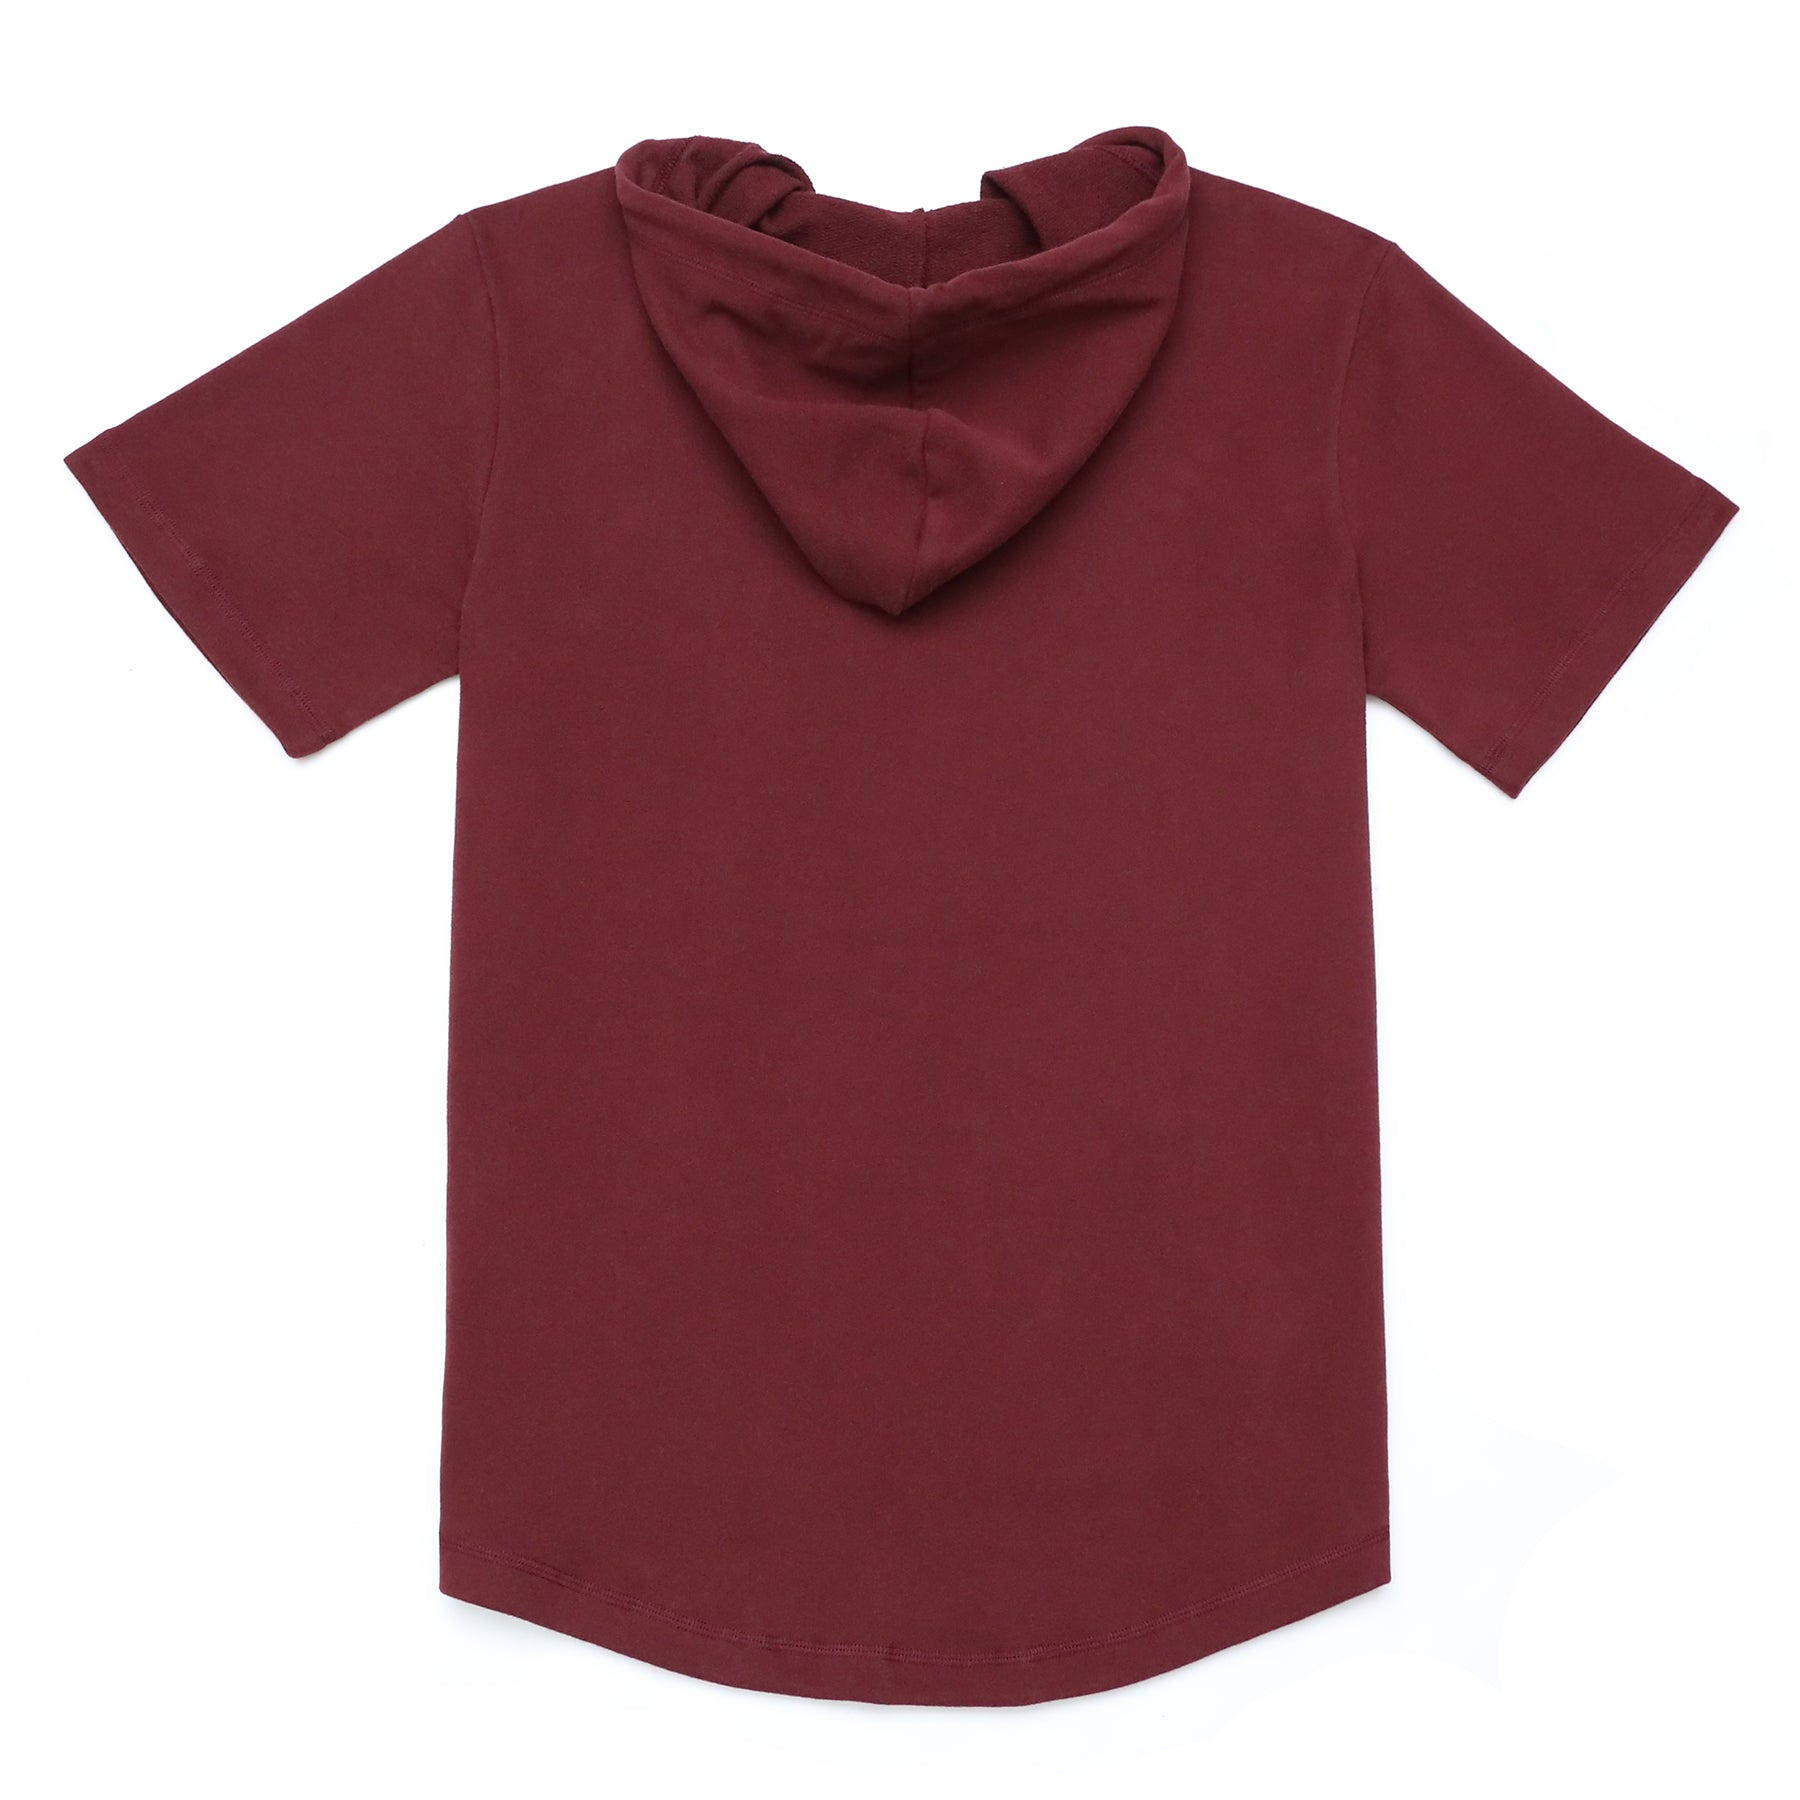 Men's Hoodies short-sleeved hooded sweatshirt #0617